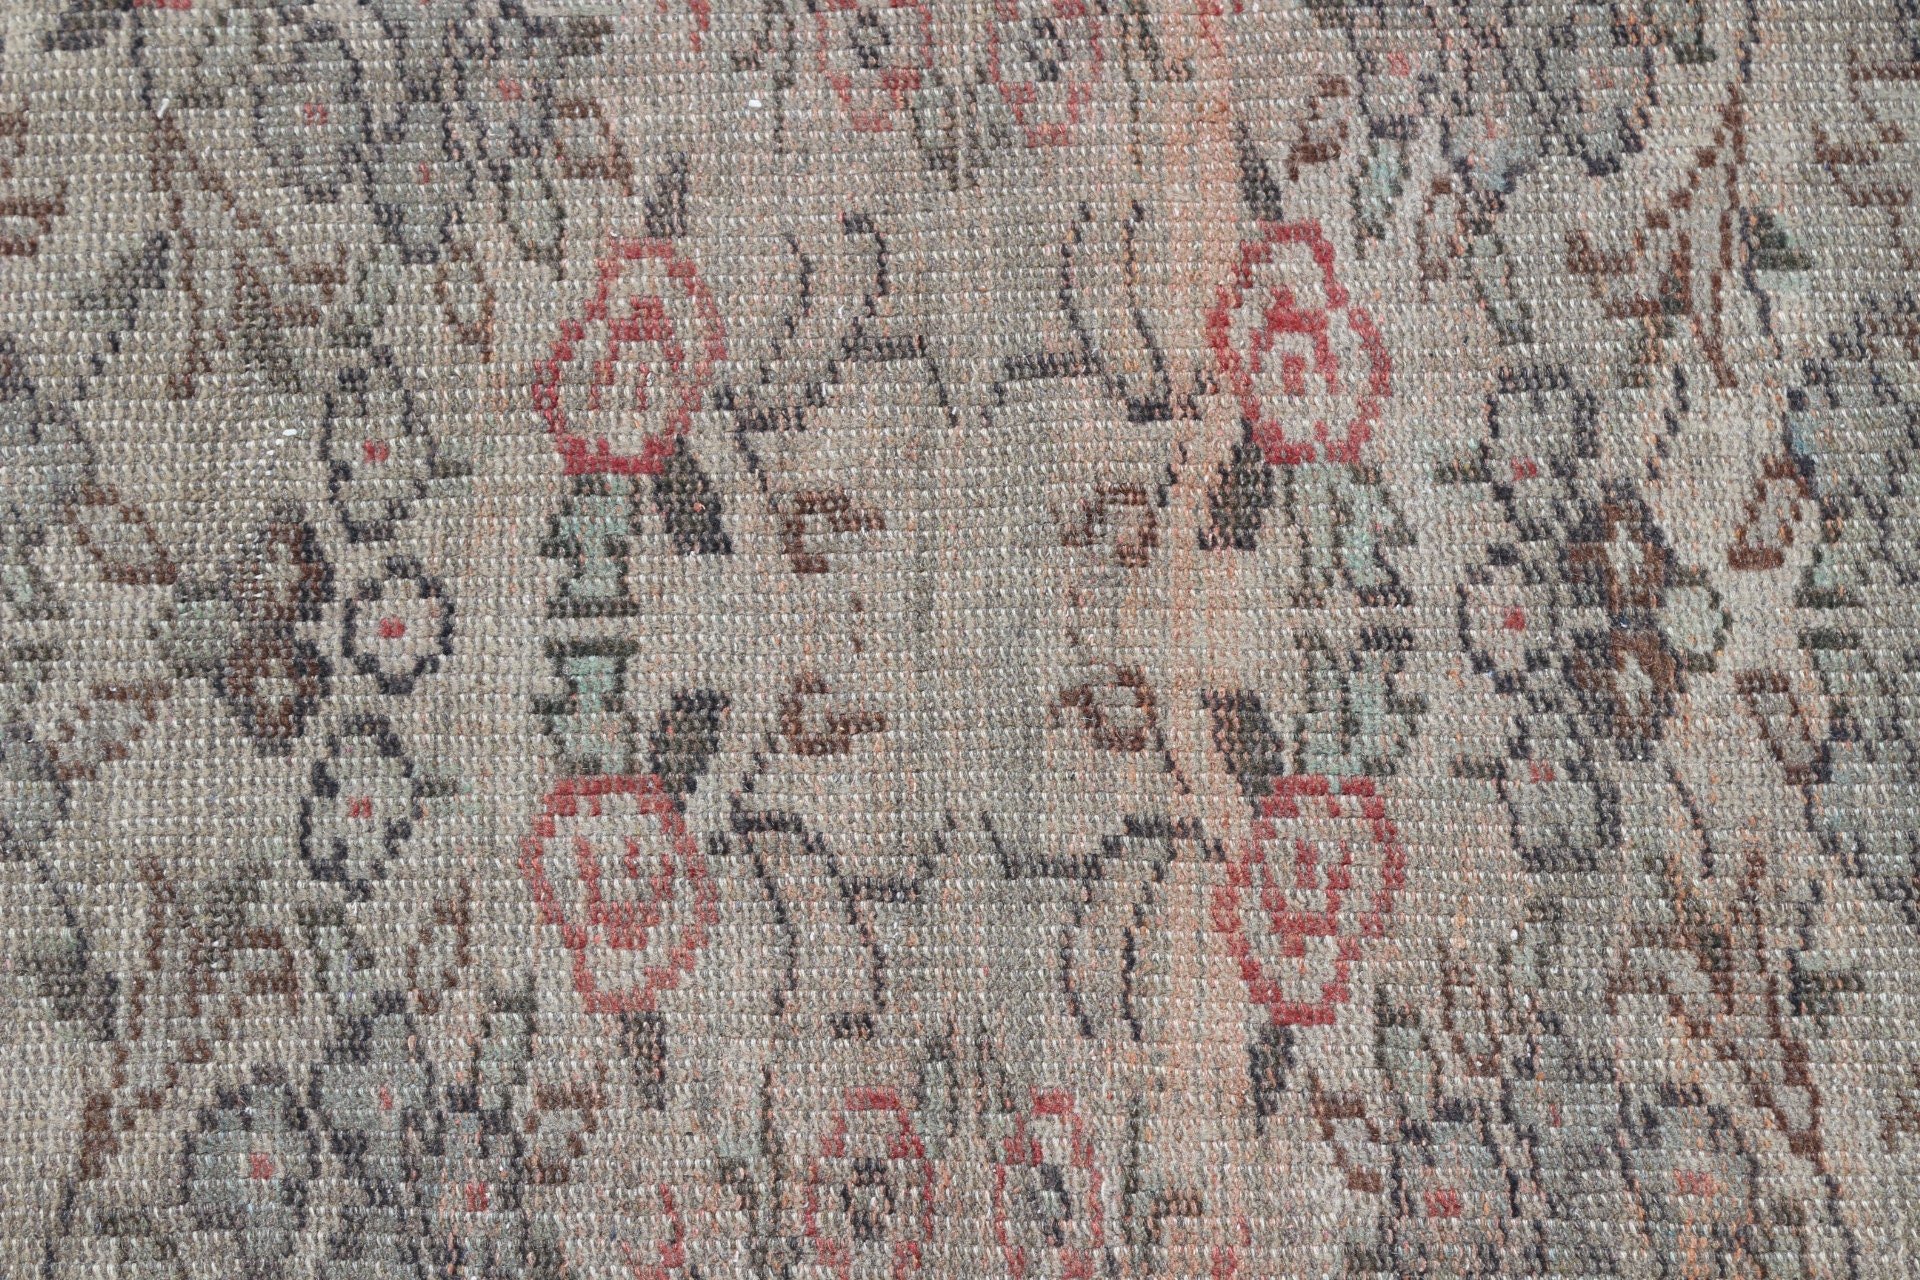 Dining Room Rugs, Turkish Rug, Aztec Rug, Bedroom Rugs, Antique Rug, Vintage Rugs, 5.9x7.1 ft Large Rug, Beige Anatolian Rugs, Moroccan Rug